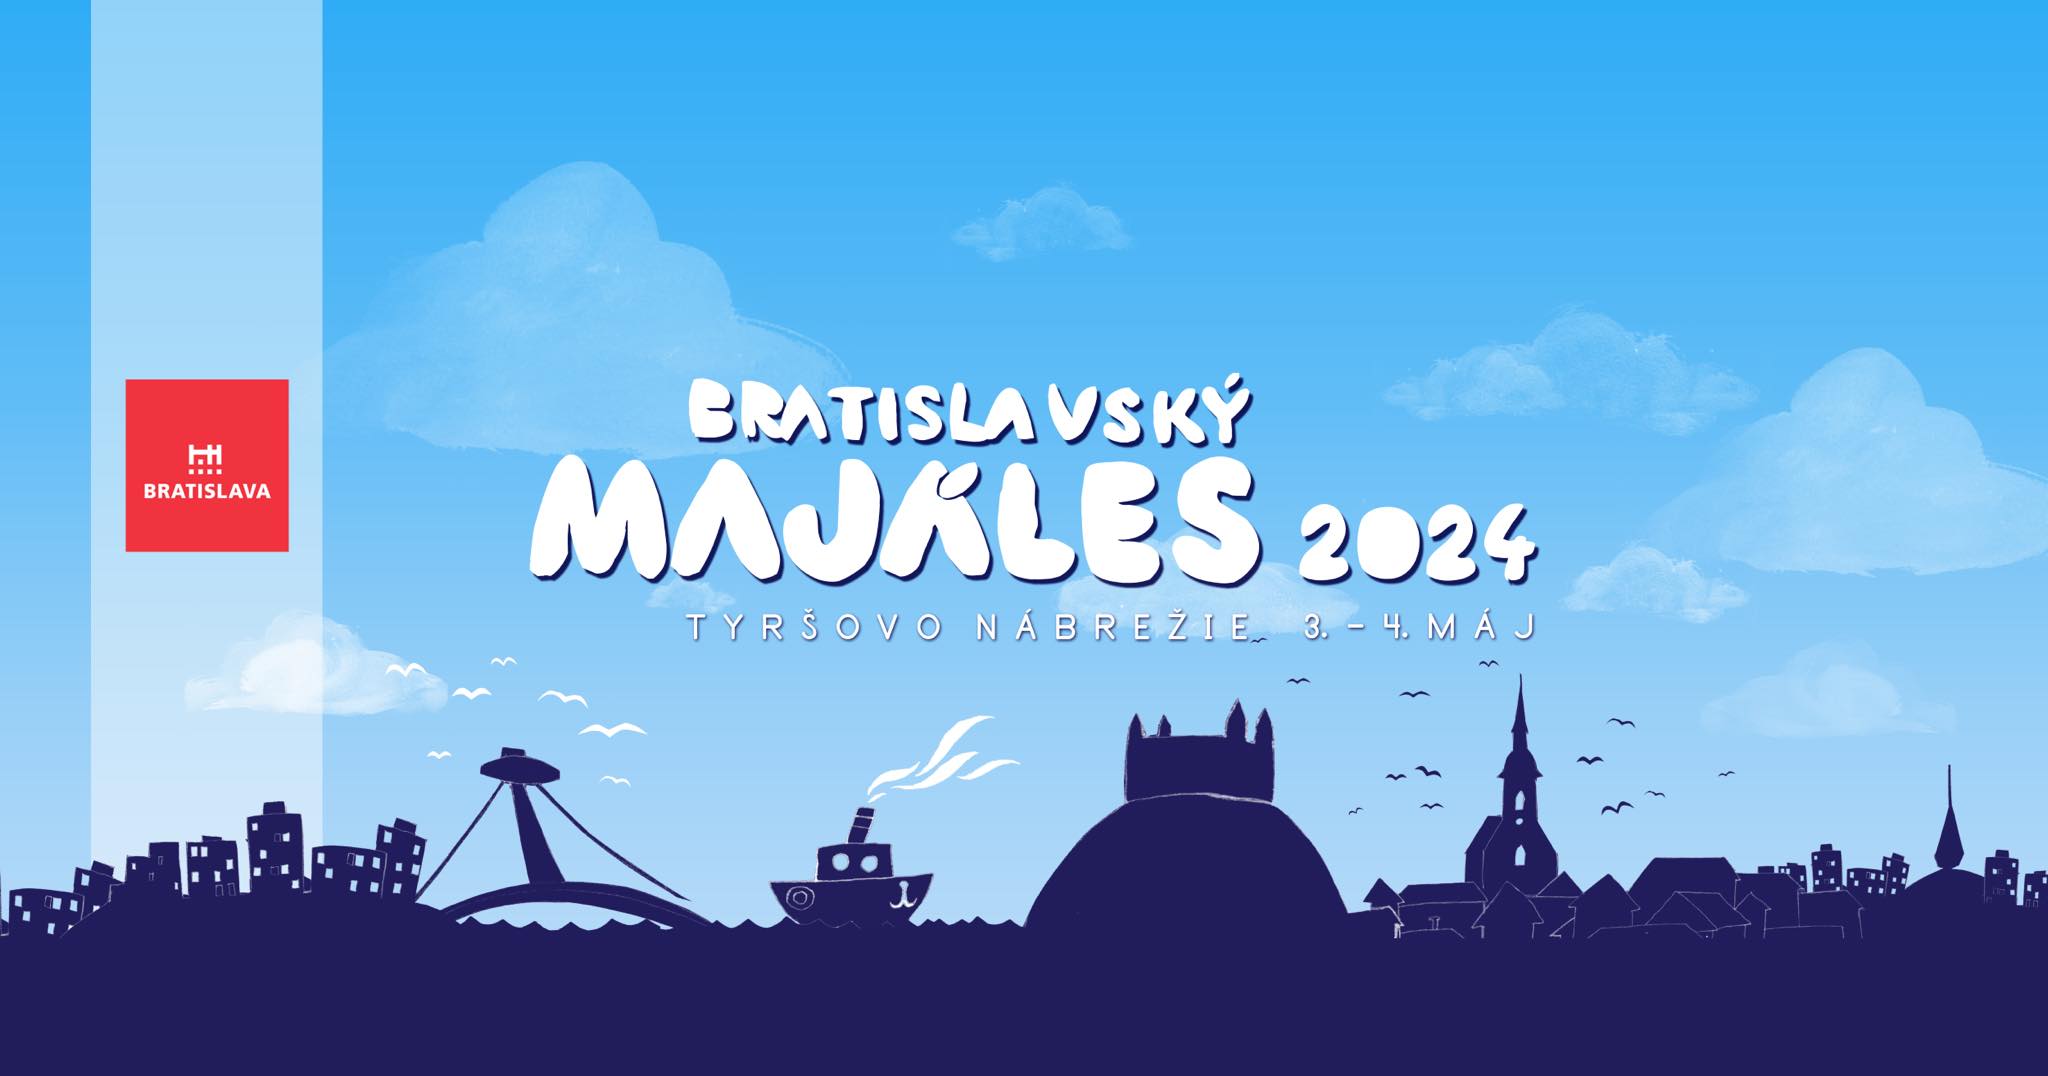 Bratislavsk majles 2024 Bratislava - 15. ronk